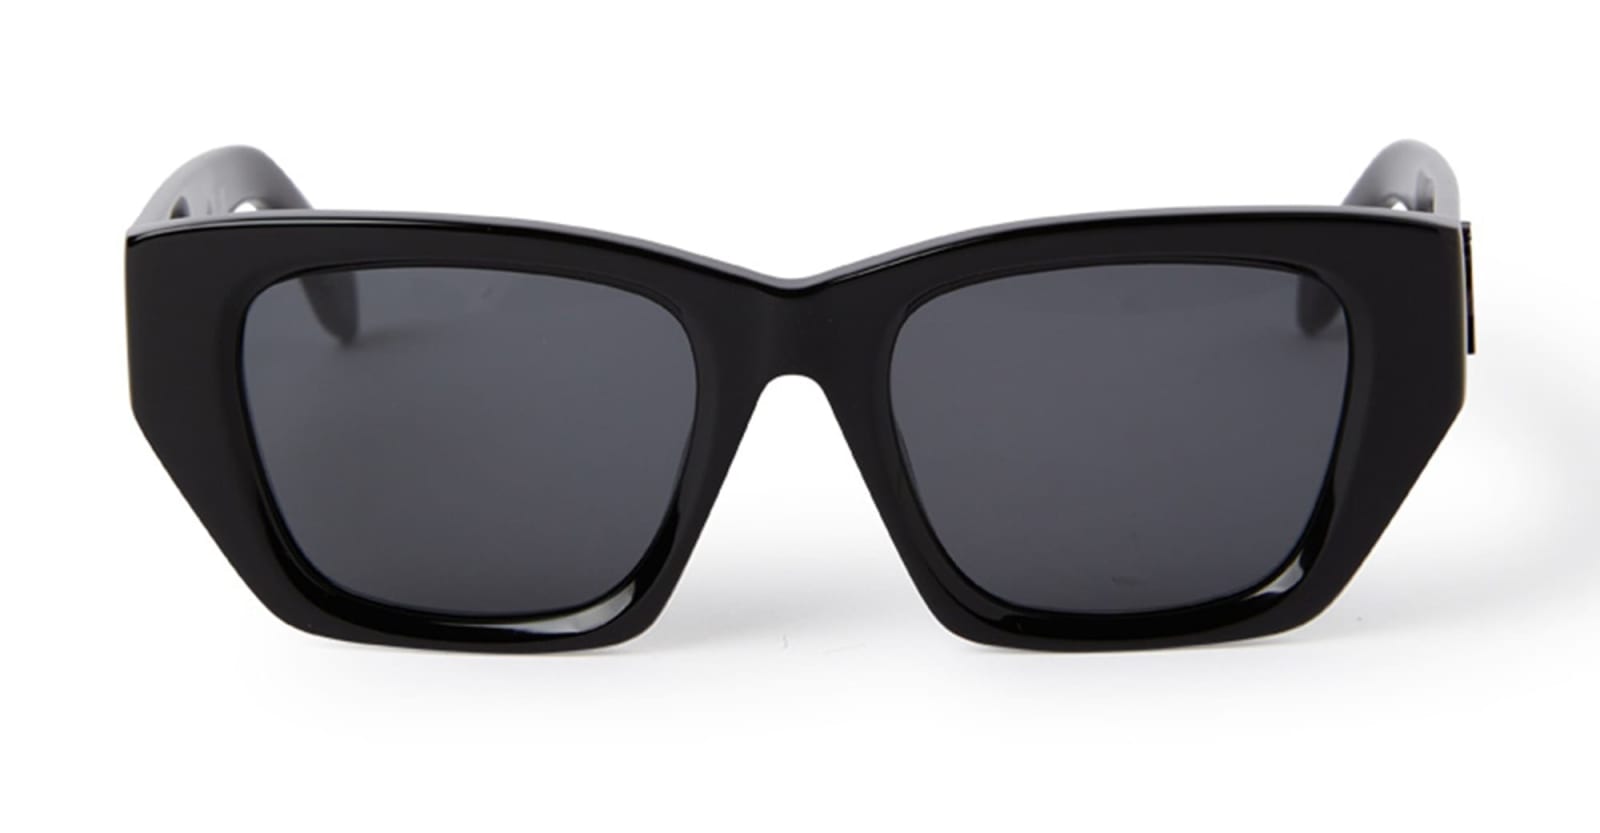 Hinkley - Black Sunglasses